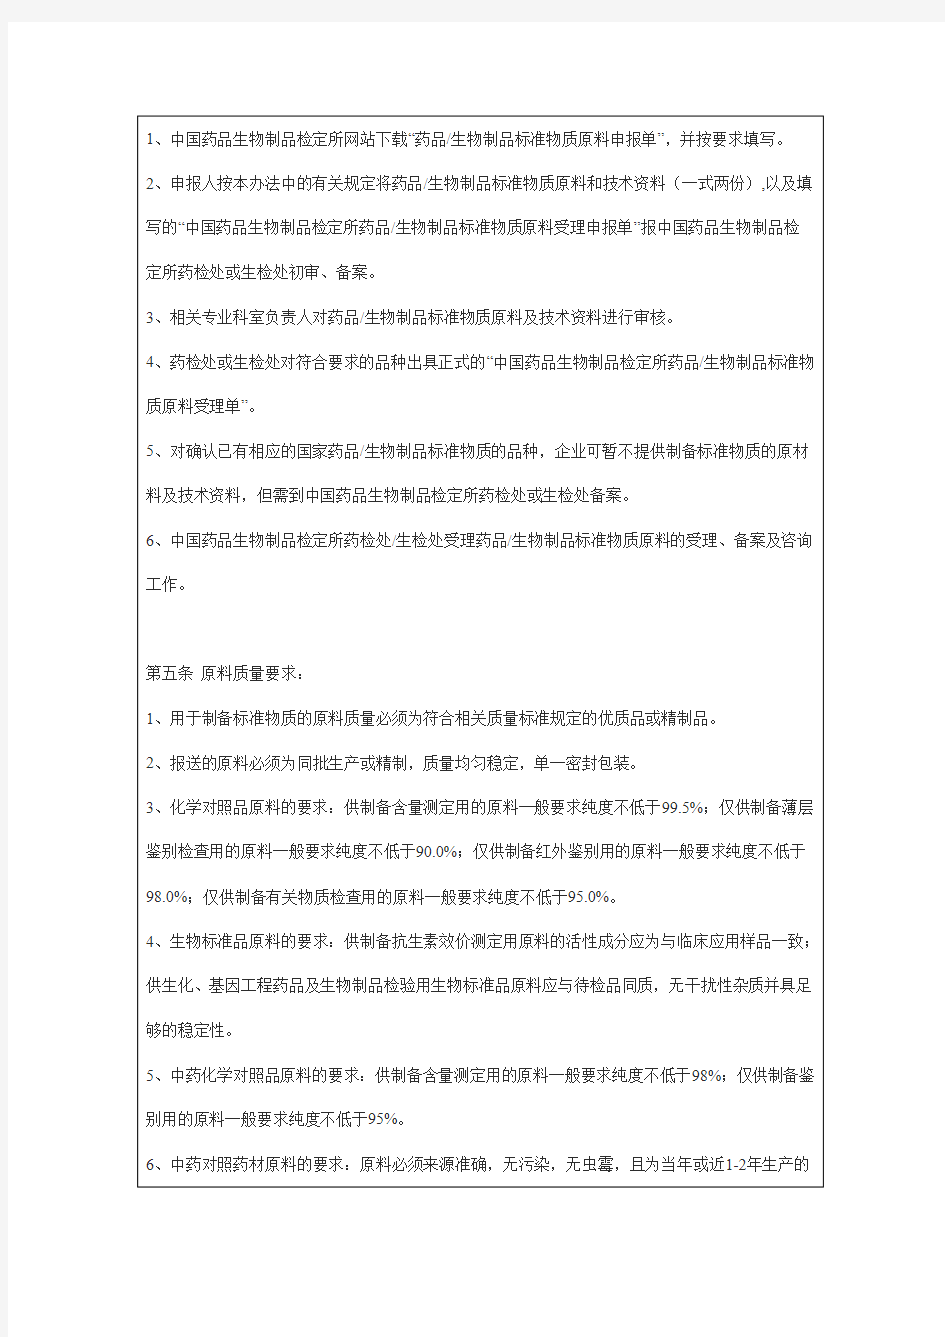 中国药品生物制品检定所药品生物制品标准物质原料申报受理办法 (试行)